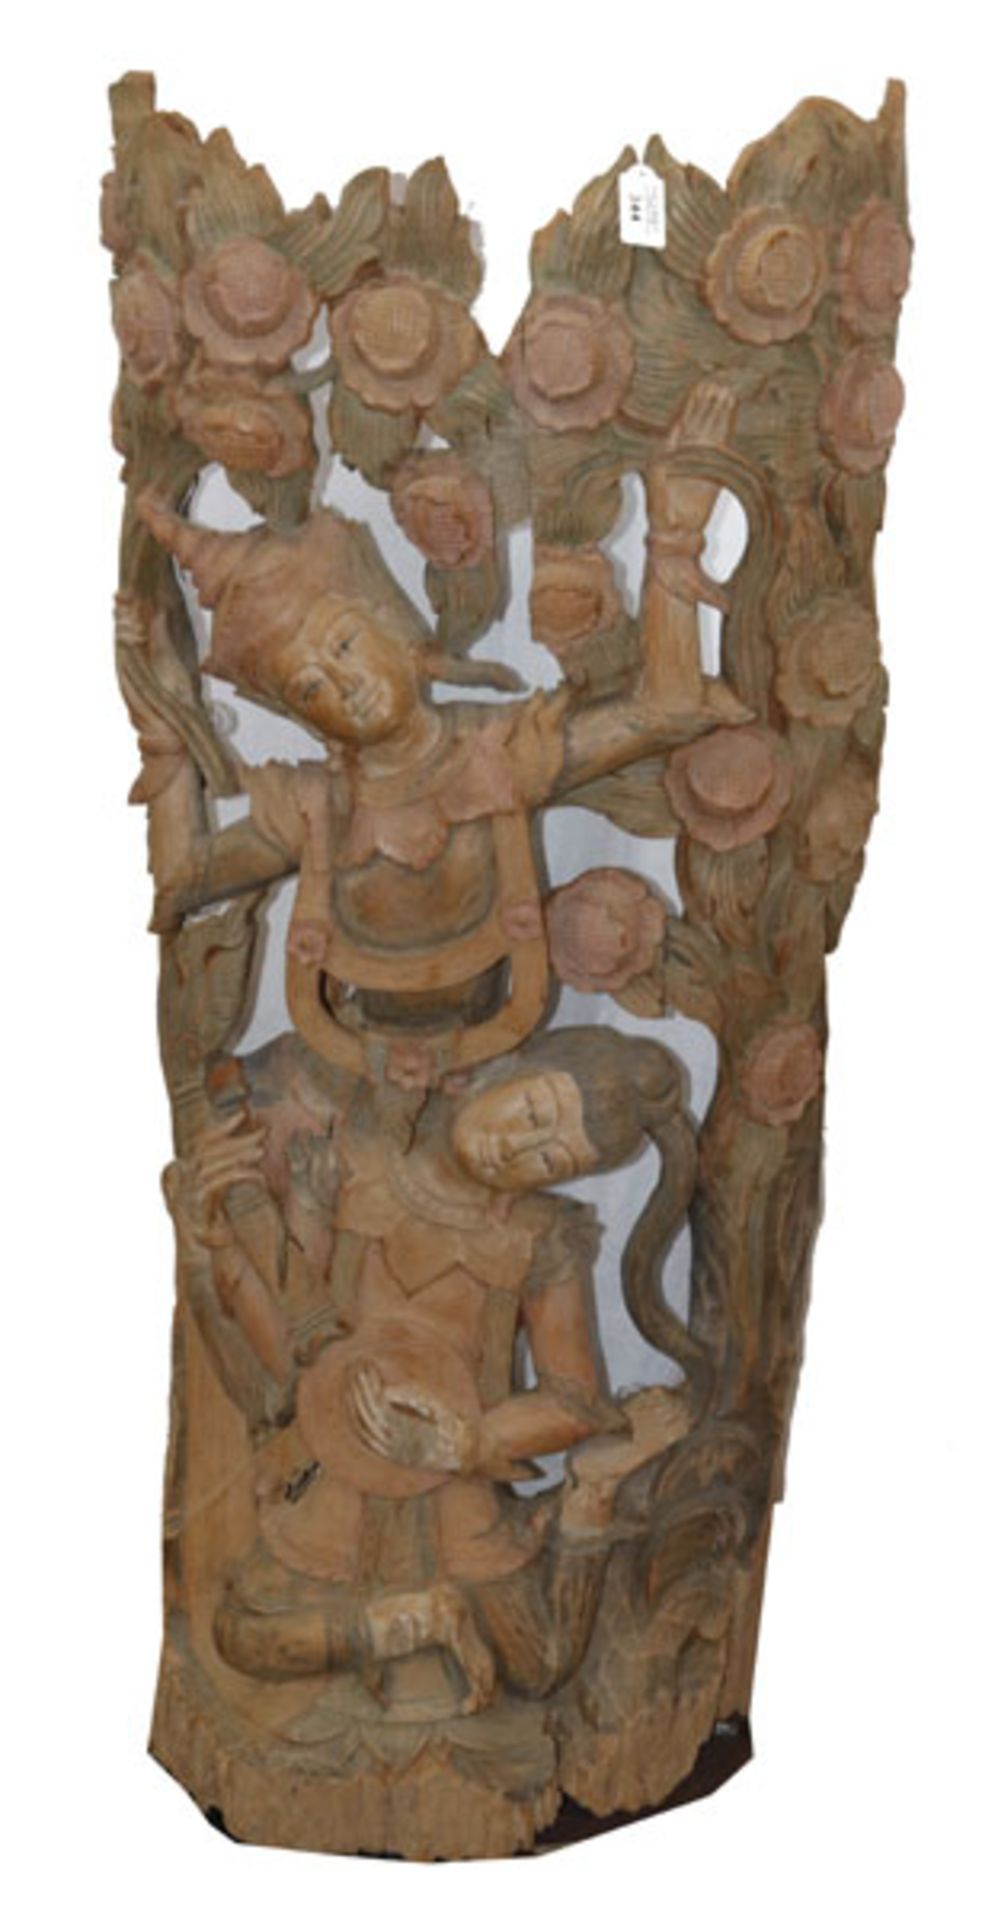 Asiatische Holzschnitzerei mit figürlichen- und floralen Darstellungen, farbig gefaßt, auf Metall